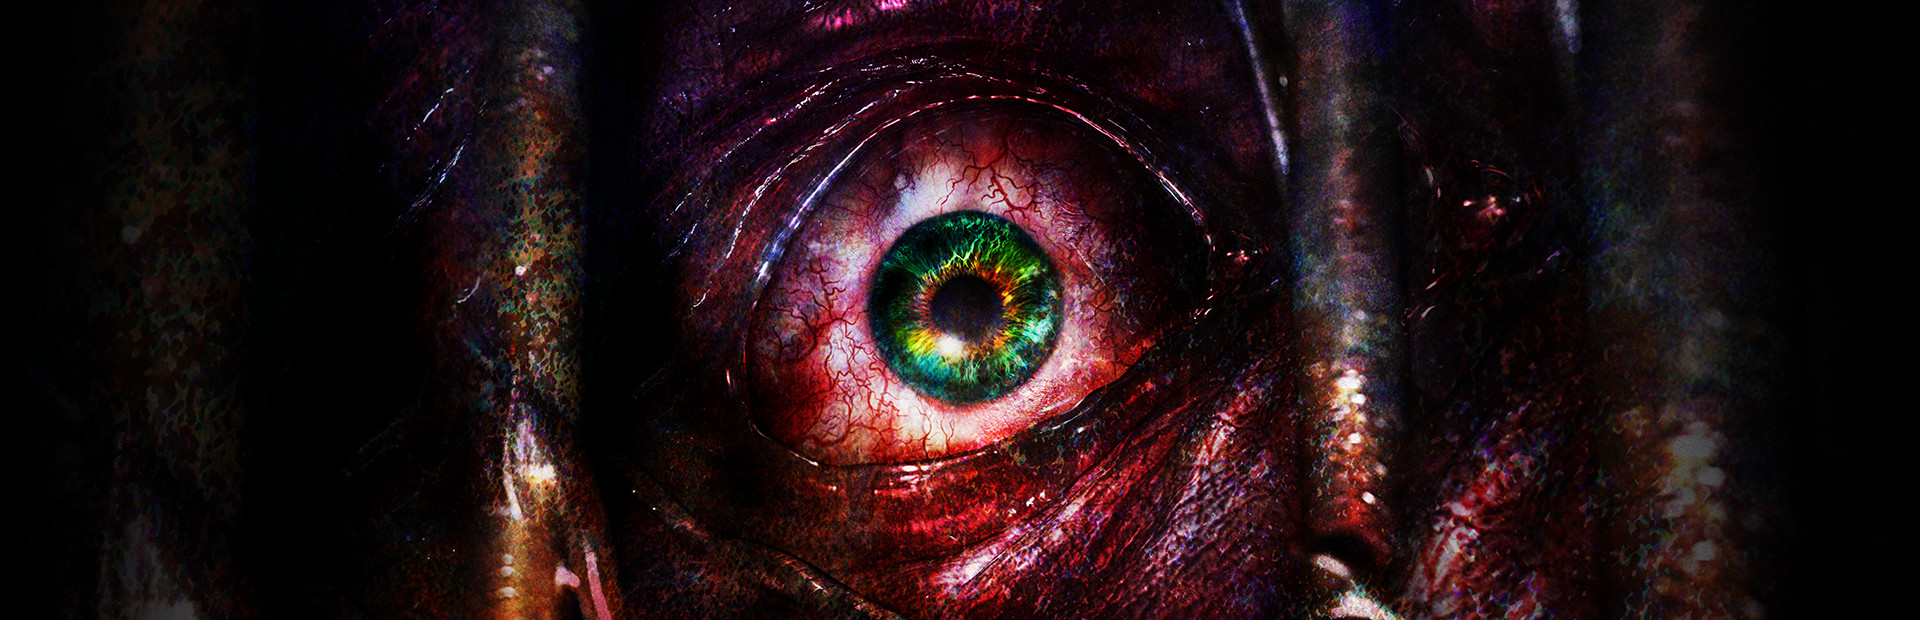 Resident Evil Revelations 2 cover image